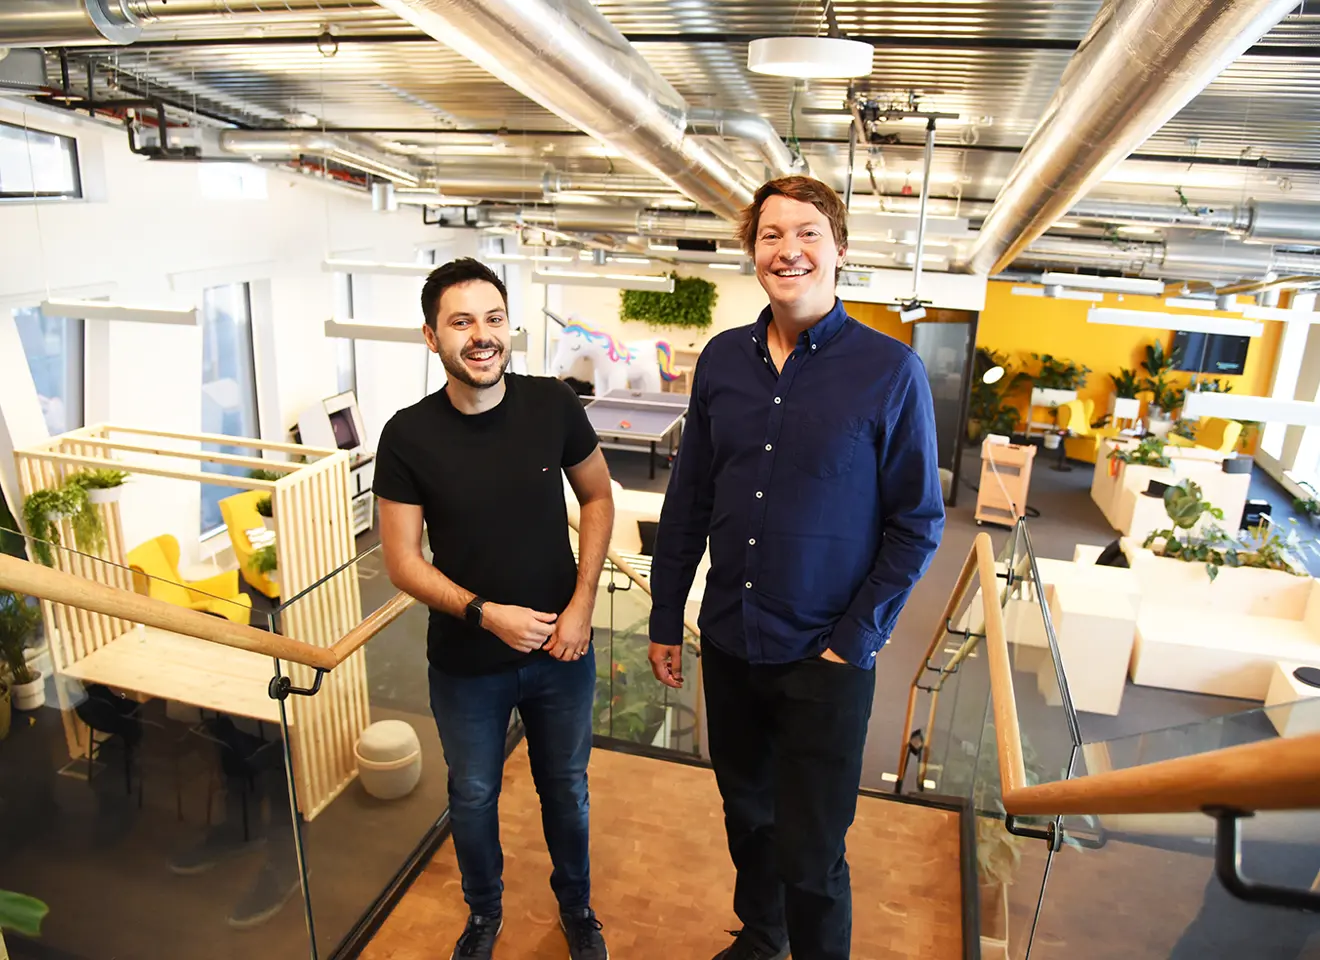 Martin Skarbø Sangolt og Christian Mikalsen står i toppen av en trapp i et kontorlokale med gule vegger